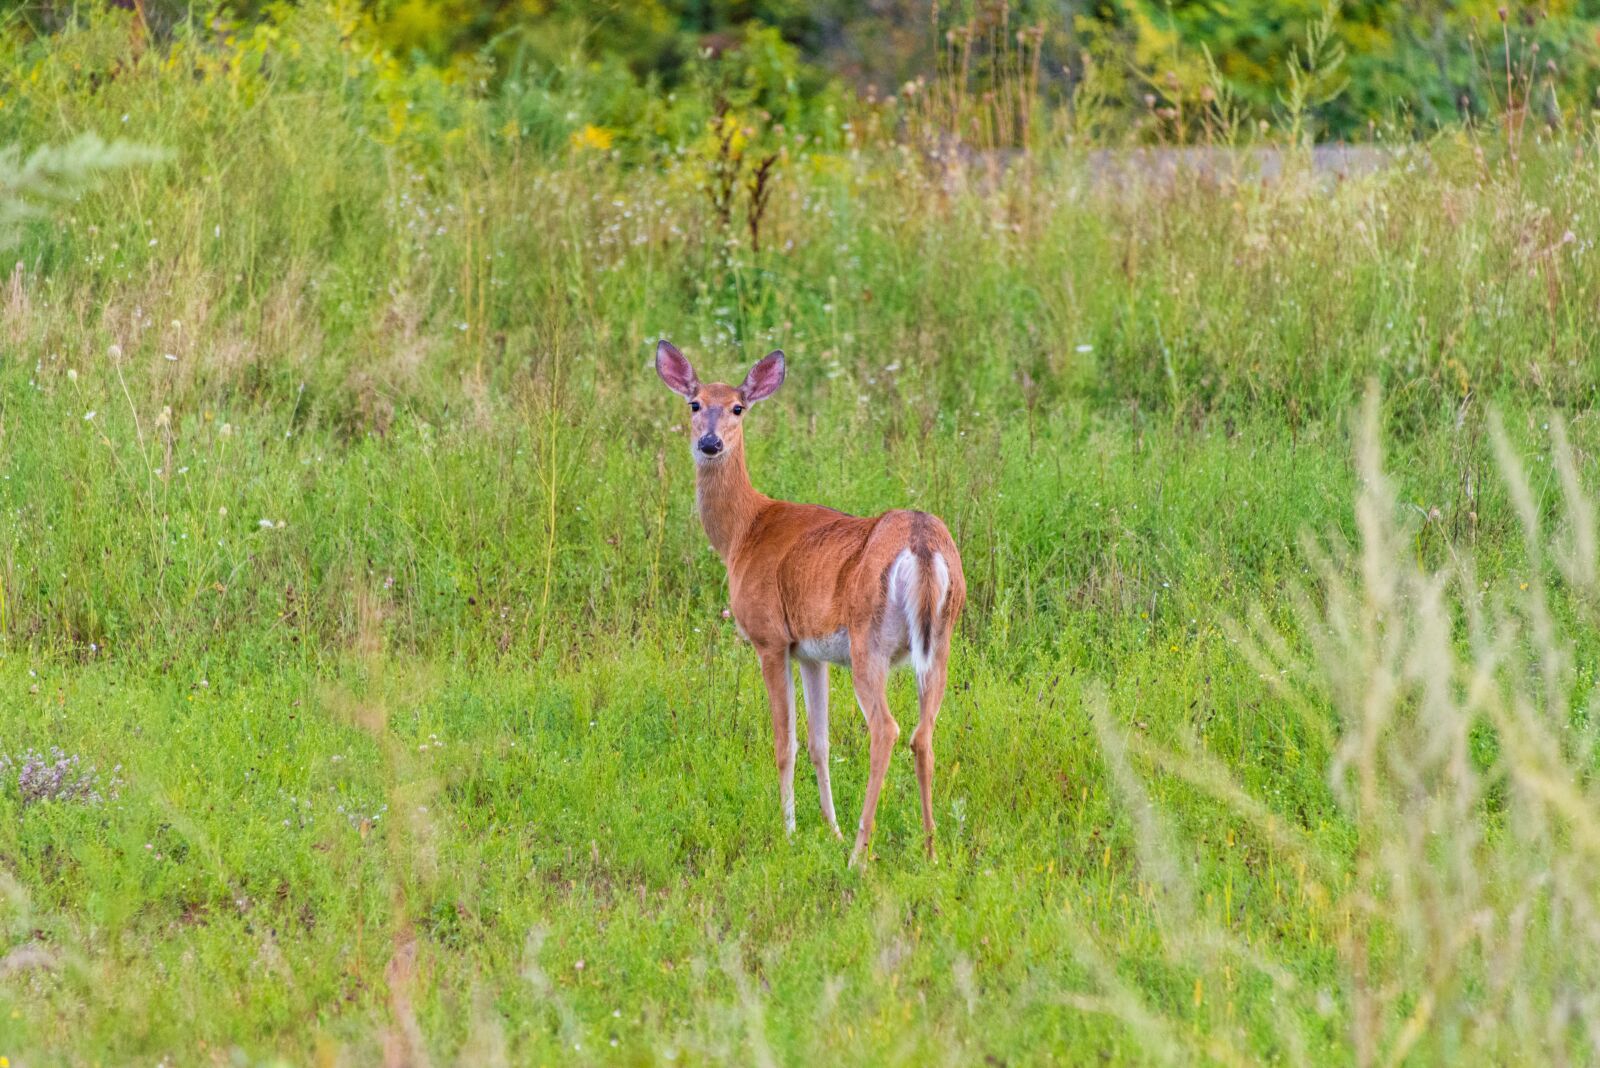 Nikon D800 sample photo. Deer, nature, wildlife photography